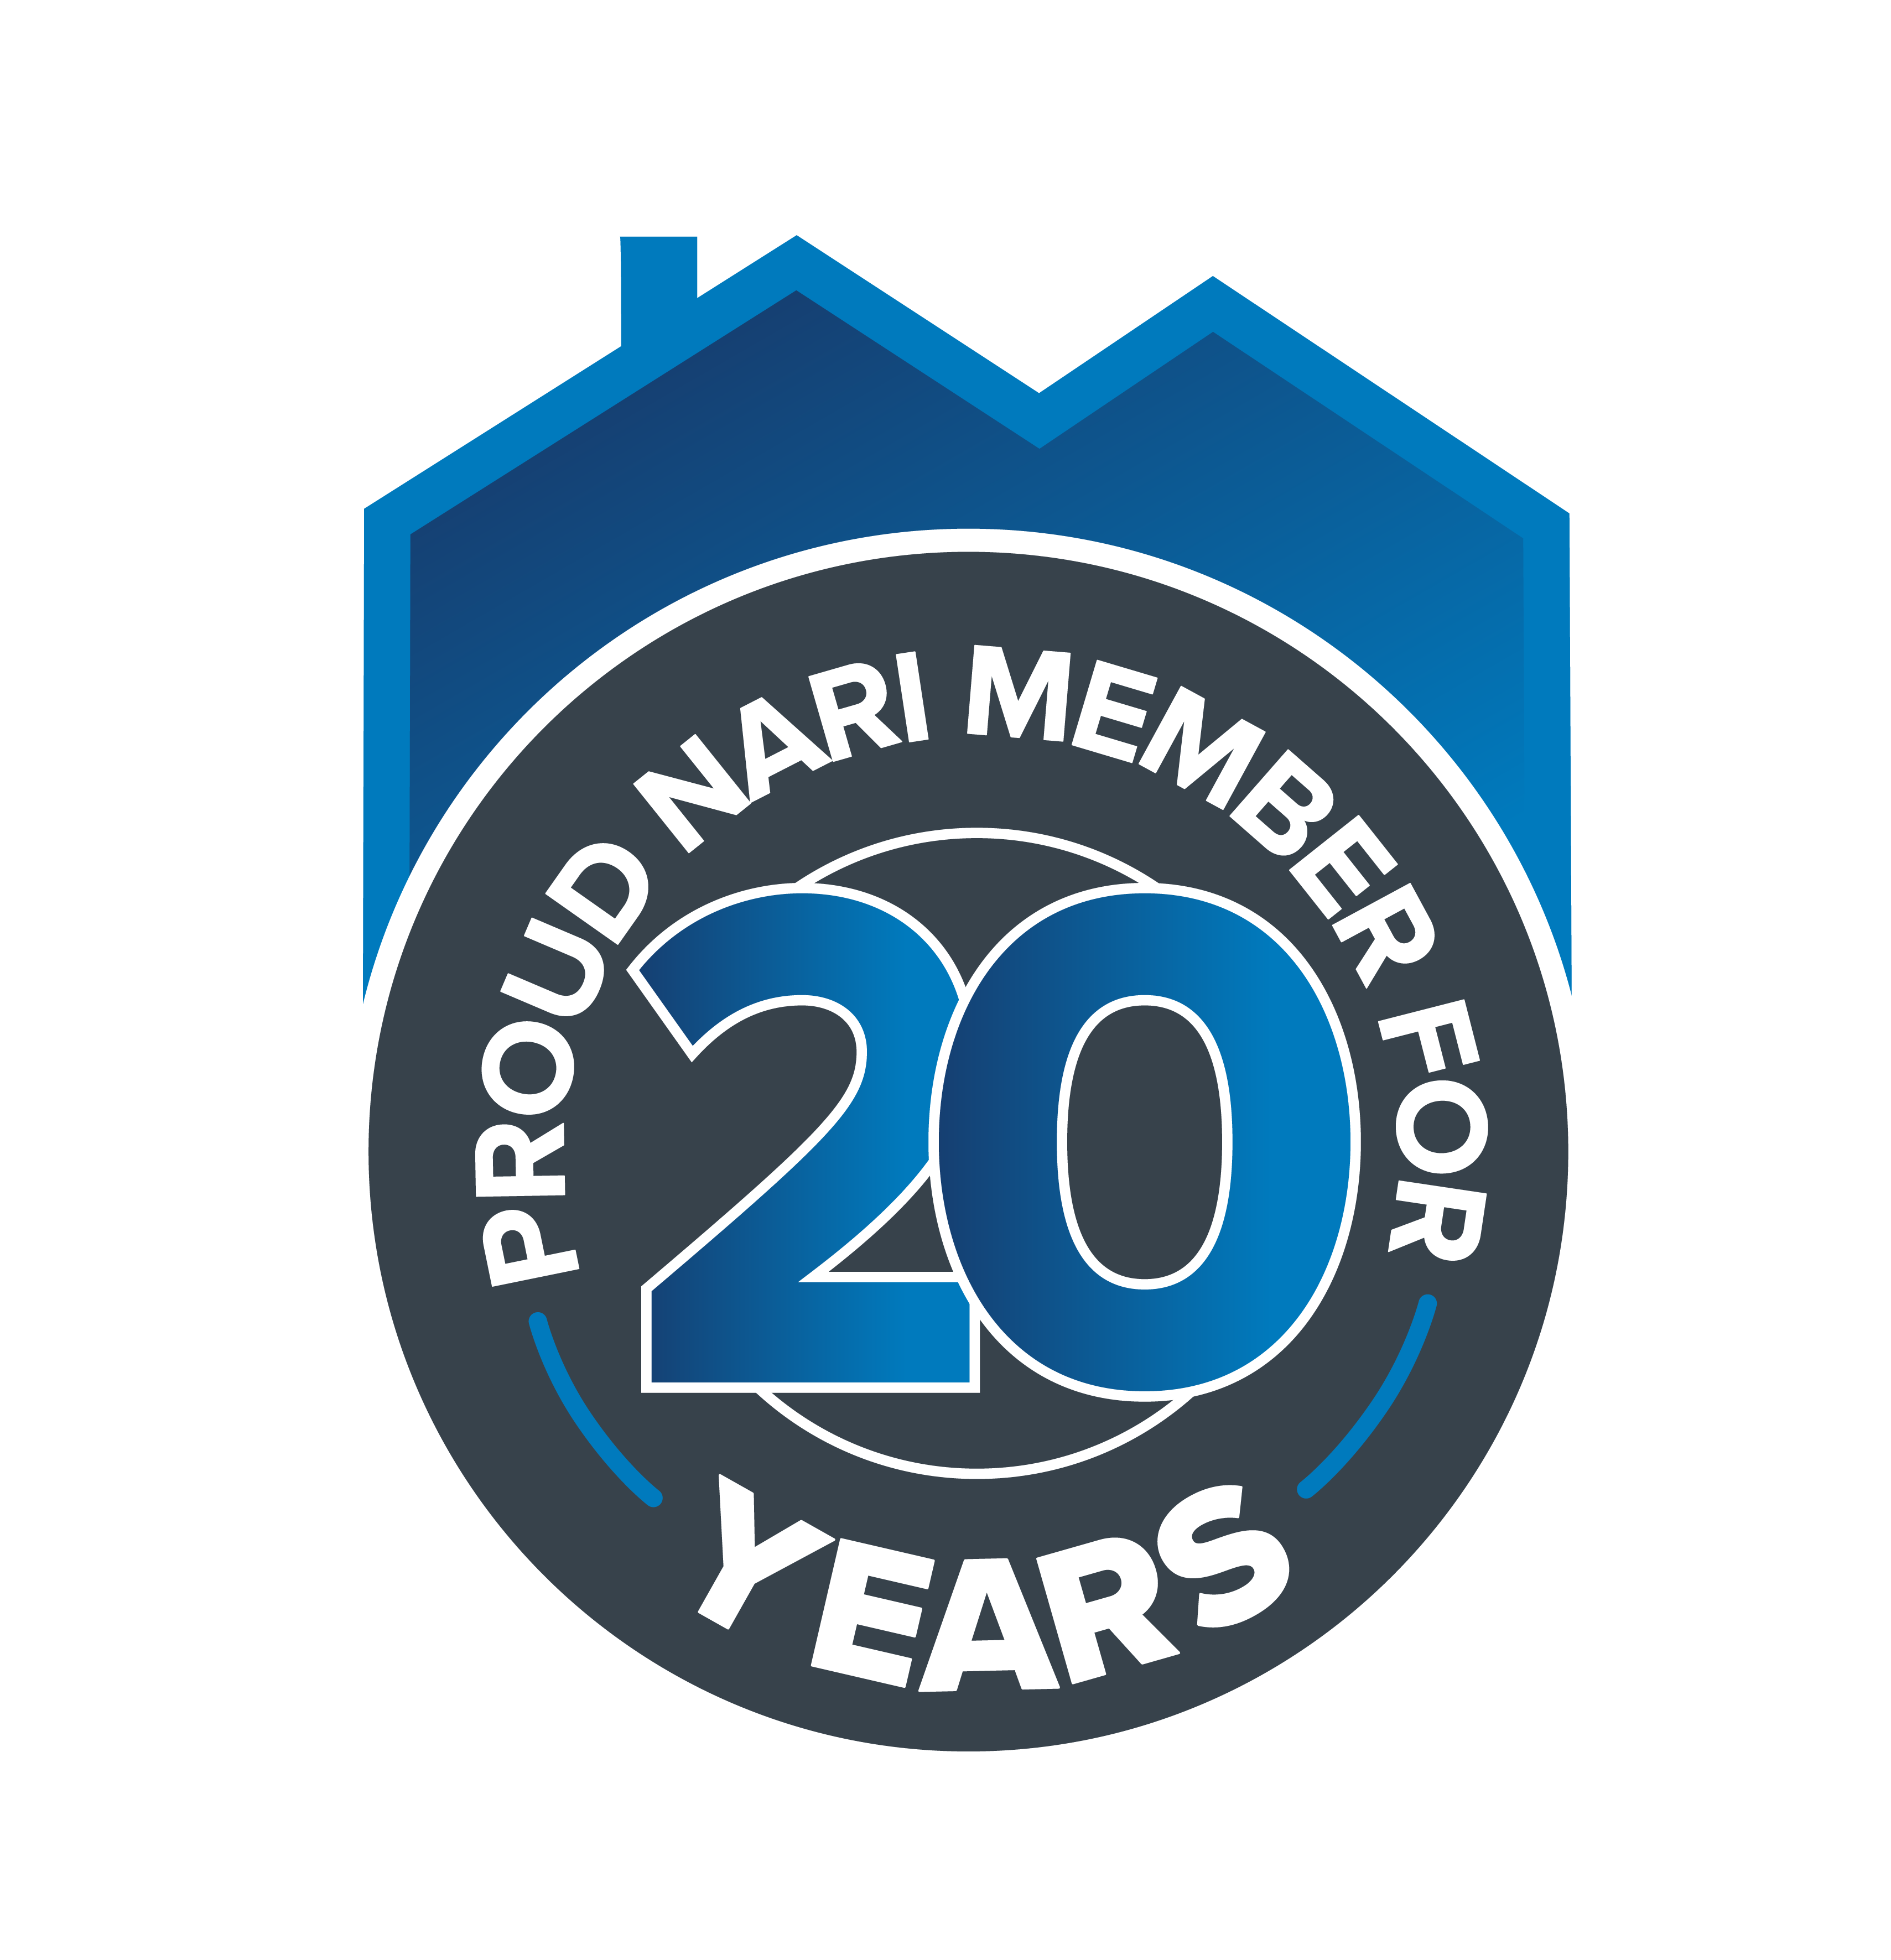 circular logo that reads 'Proud Nari Member for 20 Years'